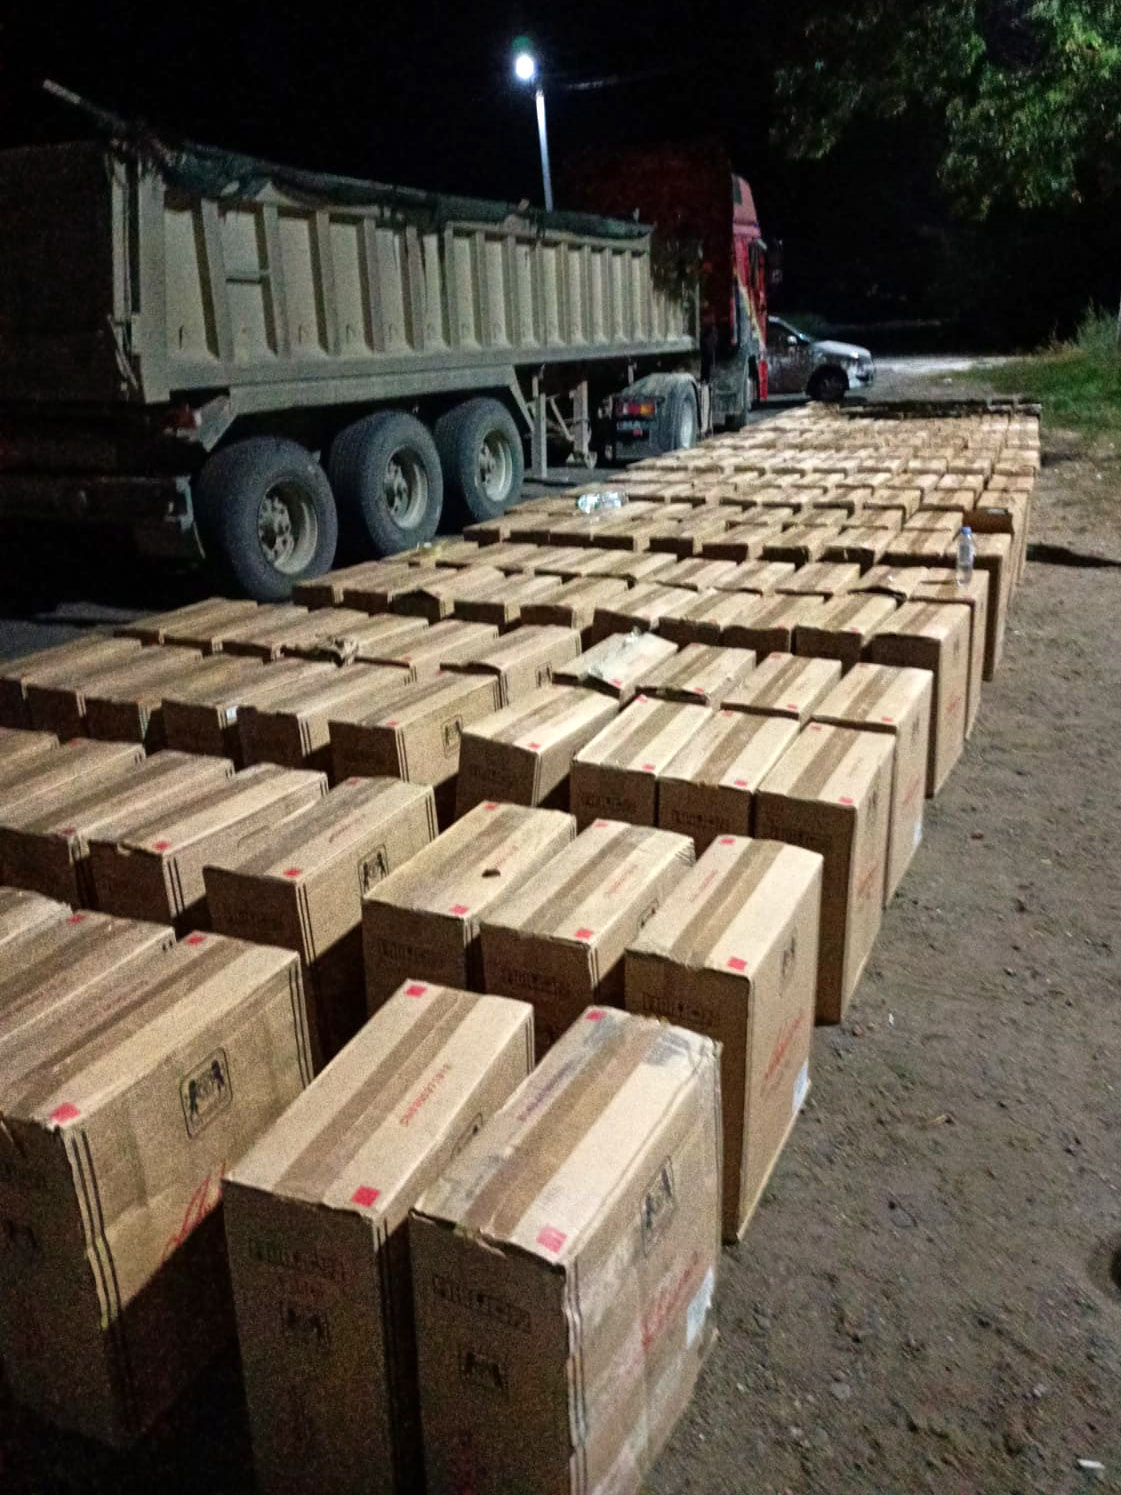 Закопали 2 млн сигарет в грузовике с песком. Таможенники предотвратили контрабанду из Приднестровья (ВИДЕО)